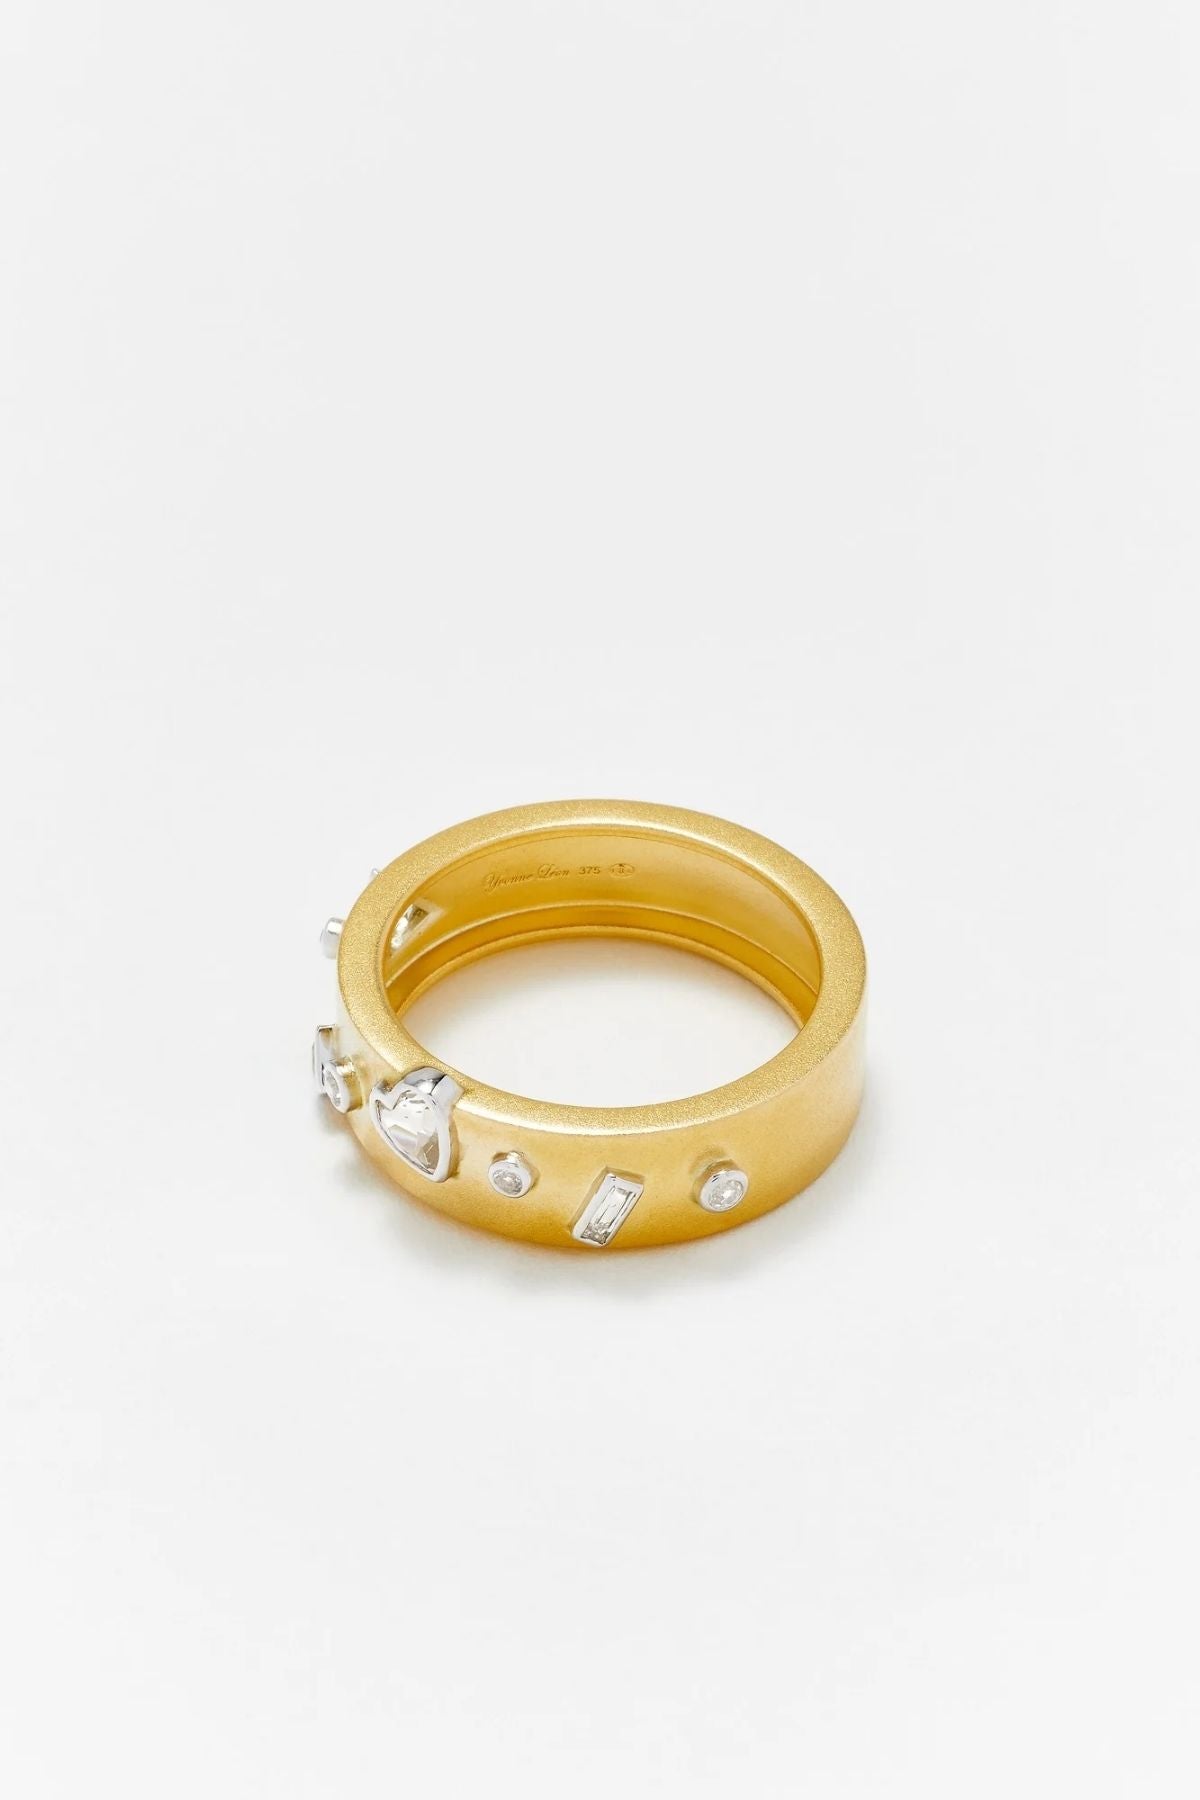 Yvonne Léon Confetti Ring - Yellow Gold